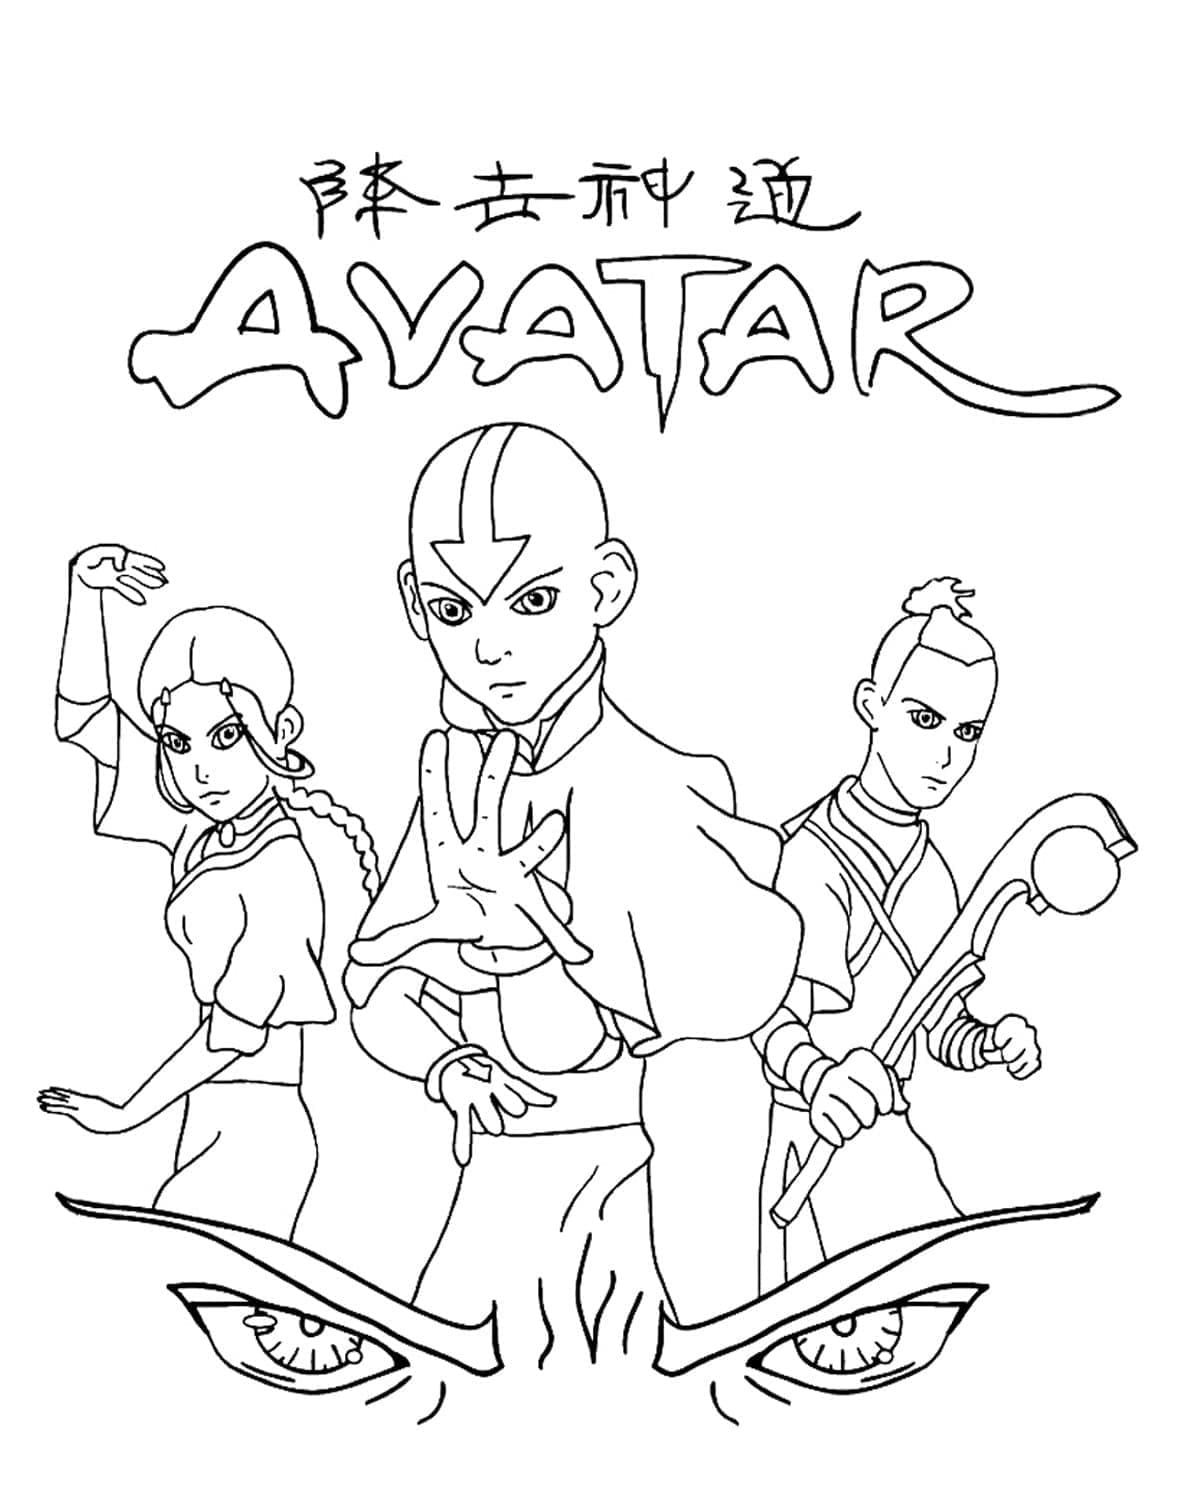 Målarbild Katara, Aang och Sokka